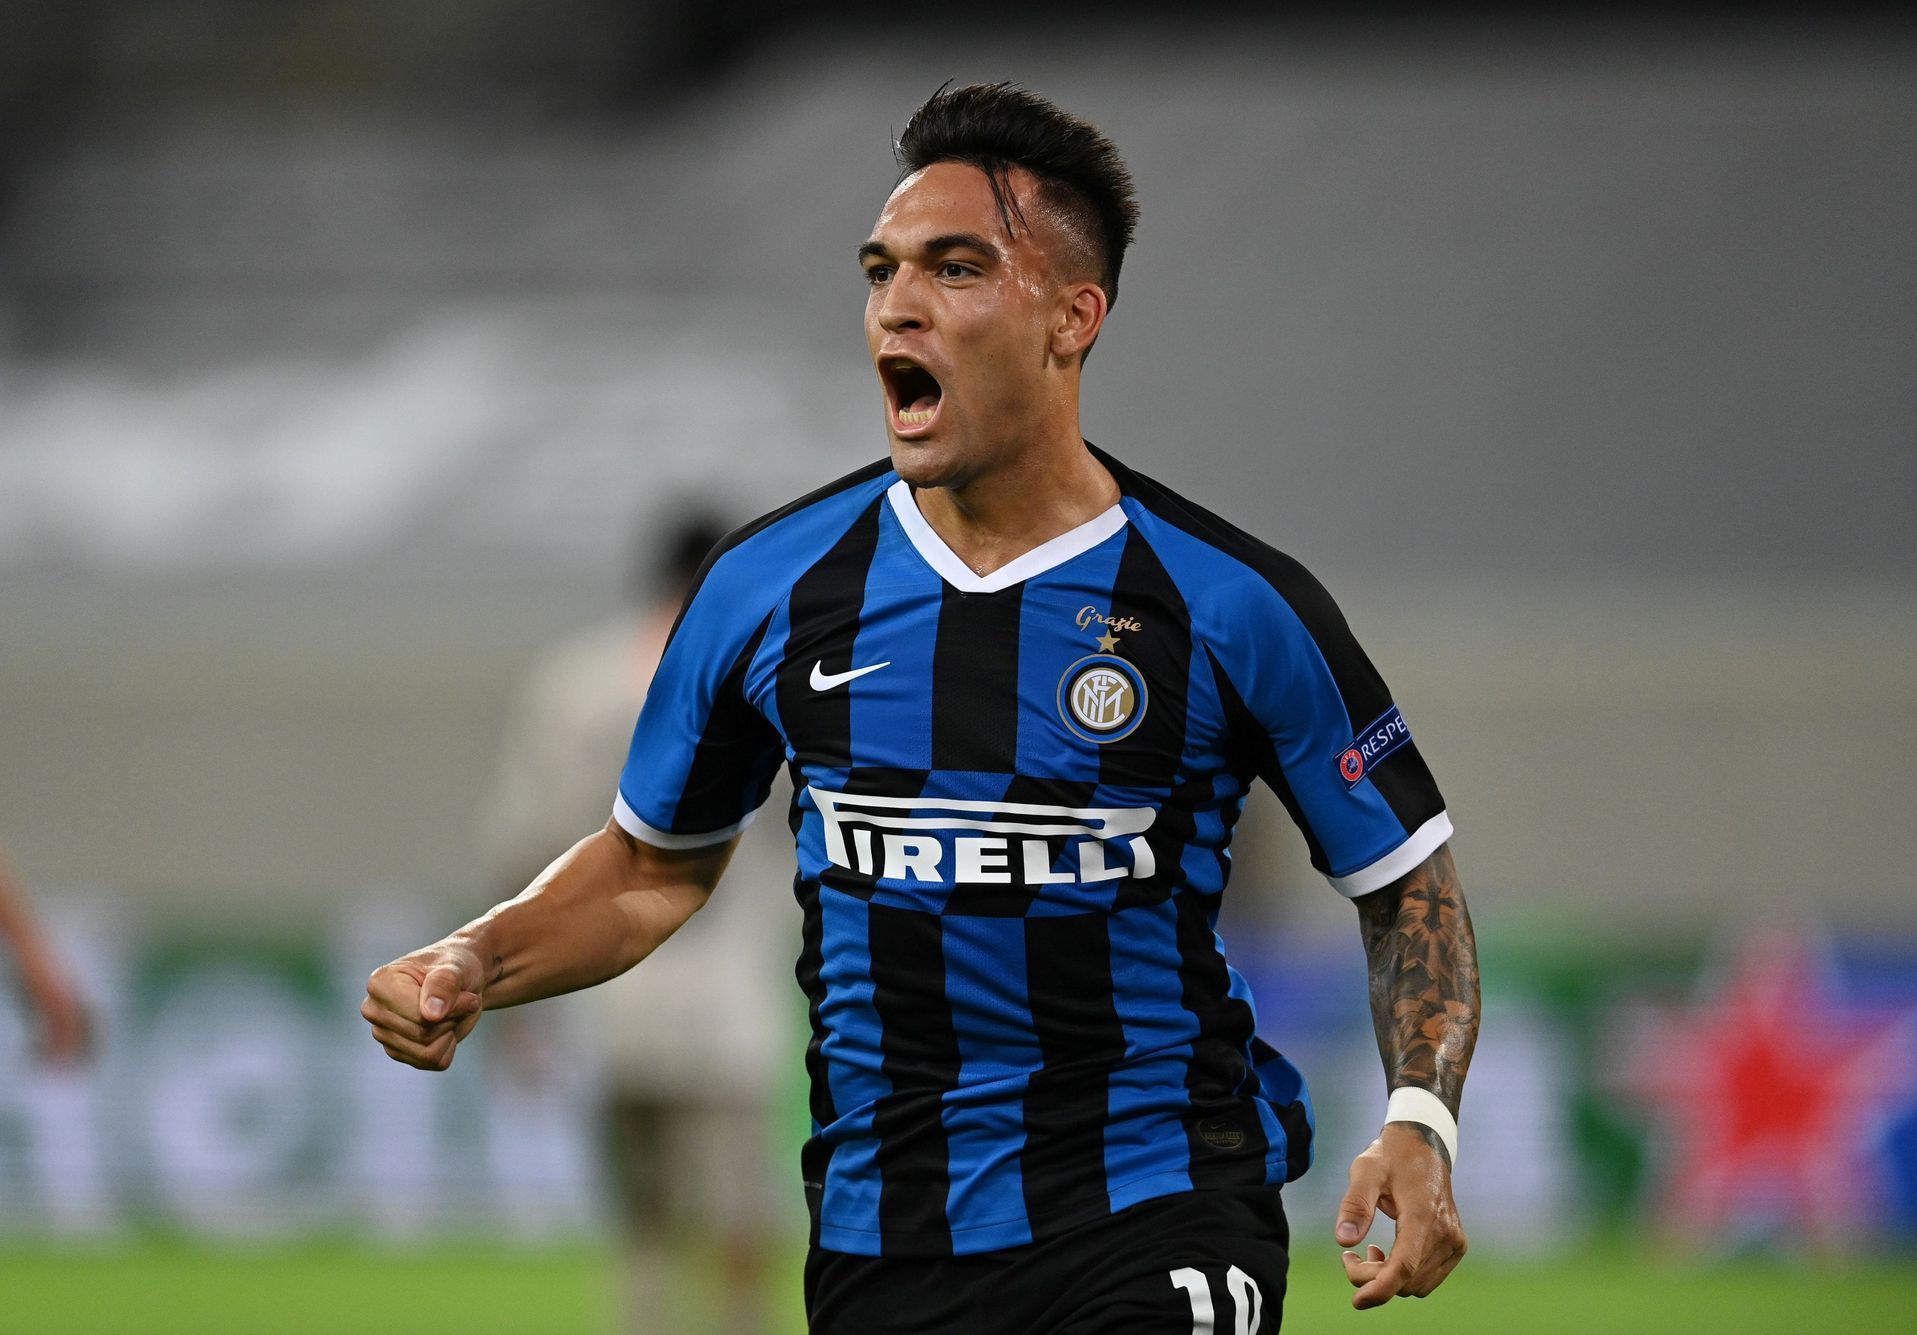 Lautaro Martinez slaví gól v semifinále Evropské ligy Inter Milán - Šachtar Doněck